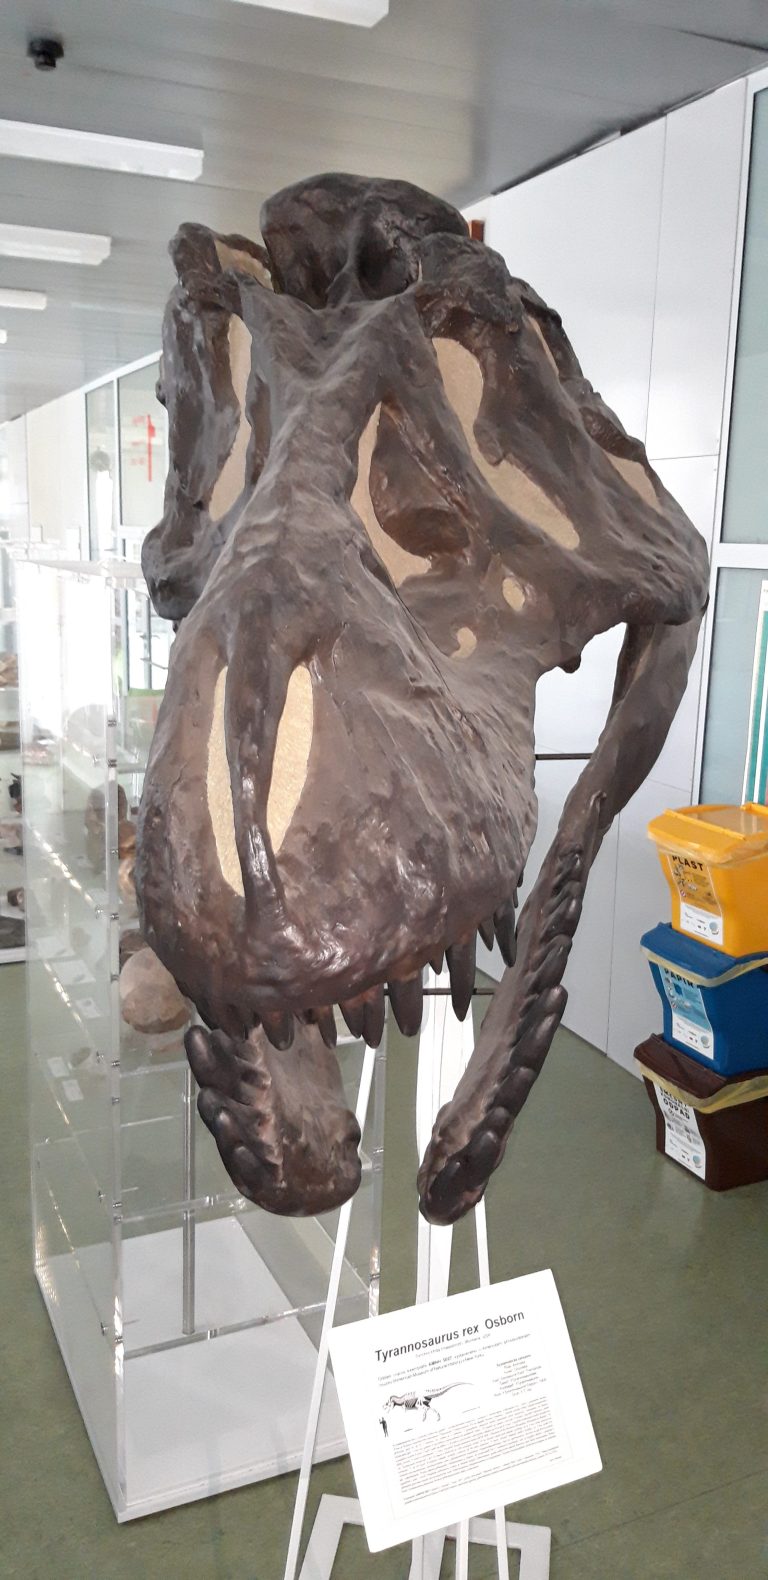 Replika lebky slavného exempláře tyranosaura AMNH 5027, zde v expozici Přírodovědecké fakulty Univerzity Palackého v Olomouci. Ačkoliv pro tuto hypotézu zatím chybí jakékoliv přímé důkazy, tyranosauři možná vyluzovali zvuky i bez nutnosti otevřít svo